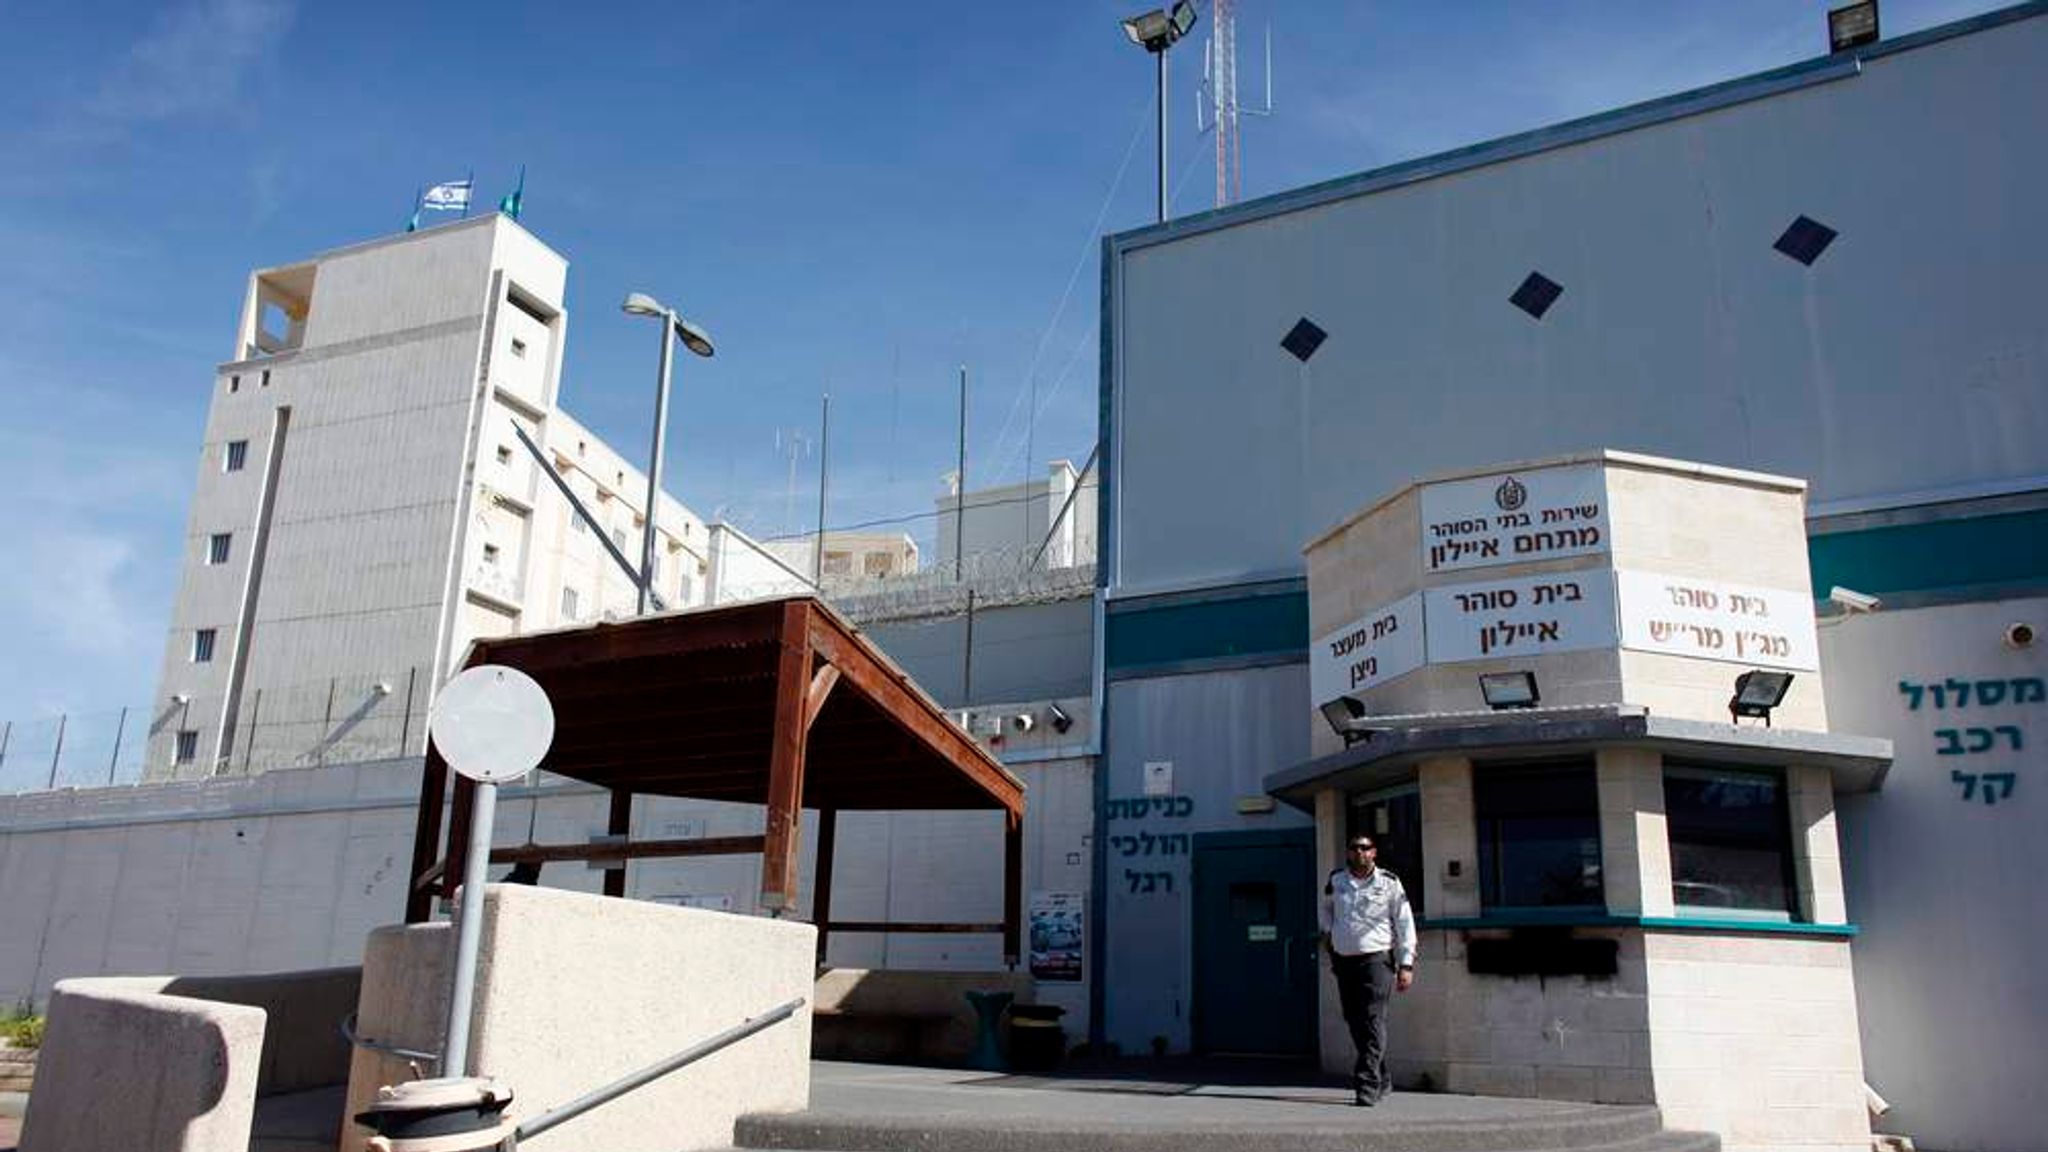 тюрьма в израиле